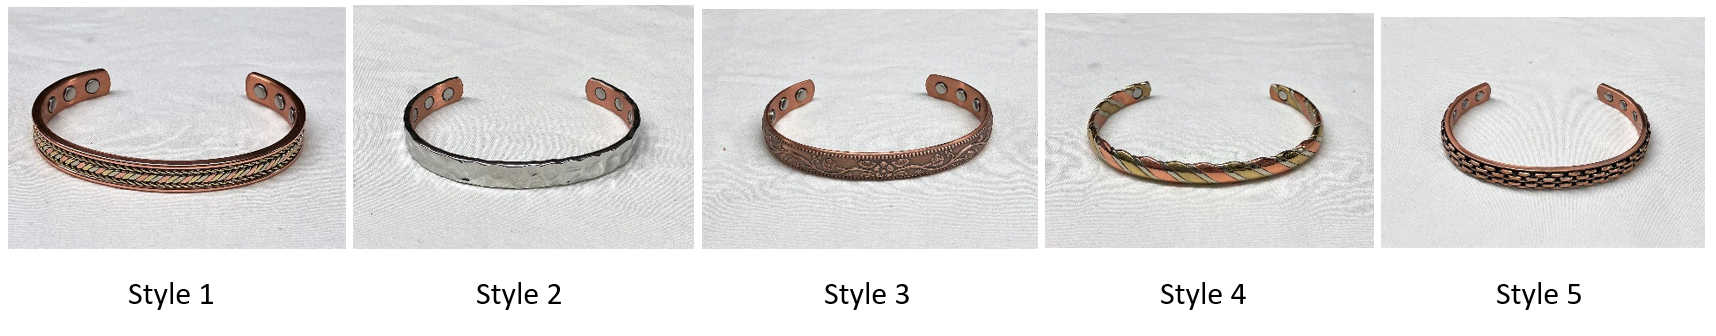 Pure Copper Bangle for Men Women Copper Bracelet Adjustable Magnetic  Bracelet HPR - Etsy